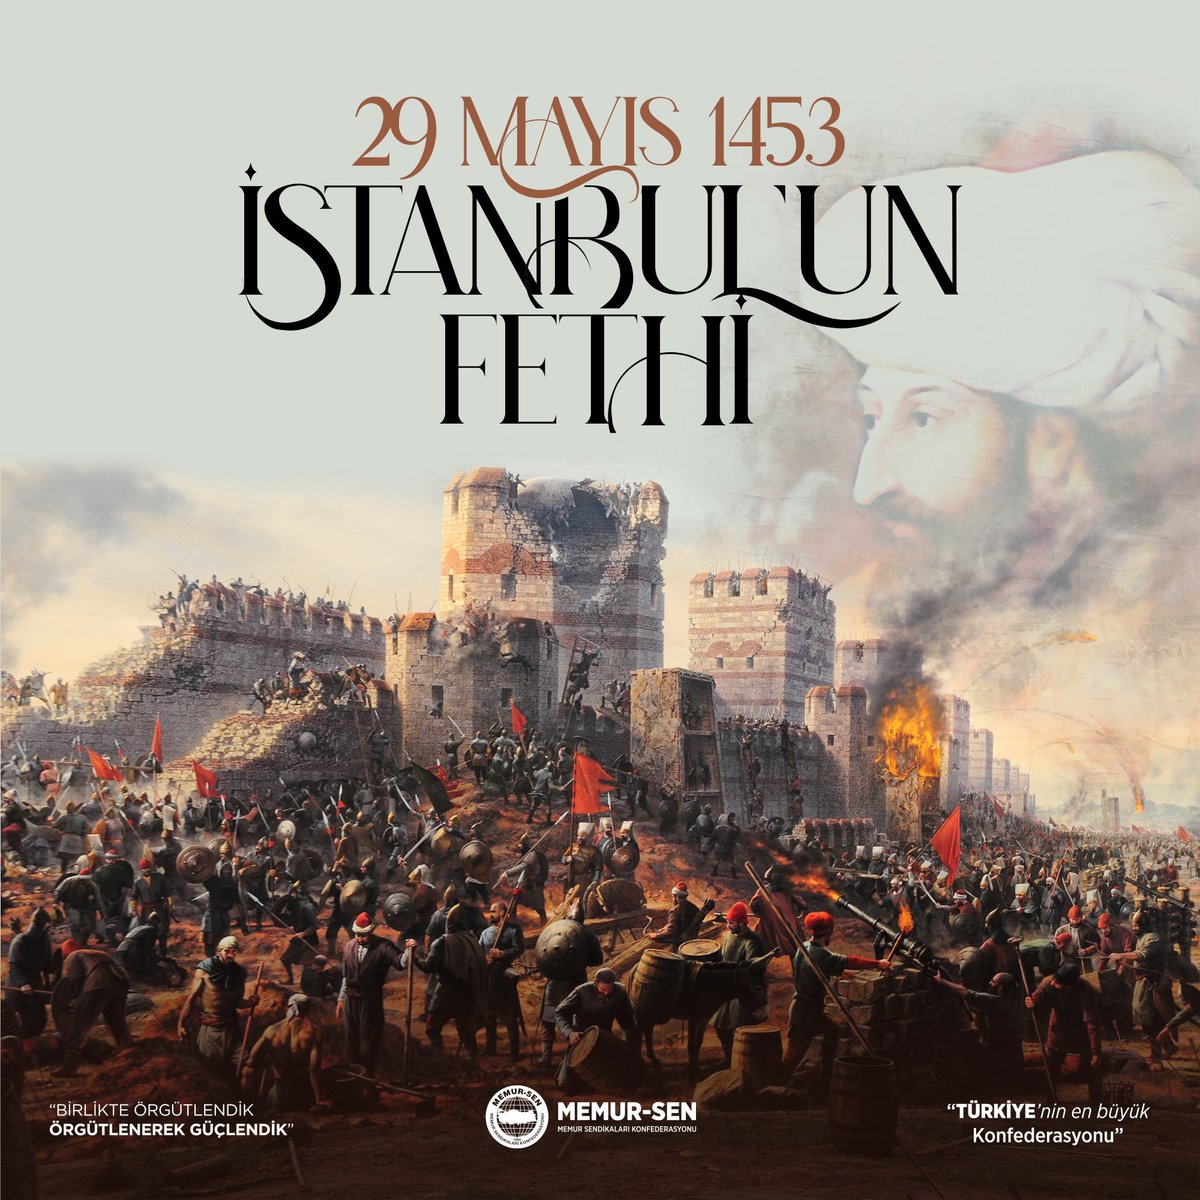 #İstanbul... O şehir ki fethiyle bir çağ kapattı, O şehir ki fatihi peygamber müjdesine mazhar oldu. İstanbul'un fethinin 571. yıl dönümünde Fatih Sultan Mehmet ve kahraman ordusunu rahmetle ve minnetle anıyoruz.  #29Mayıs #1453 #İstanbulunFethi